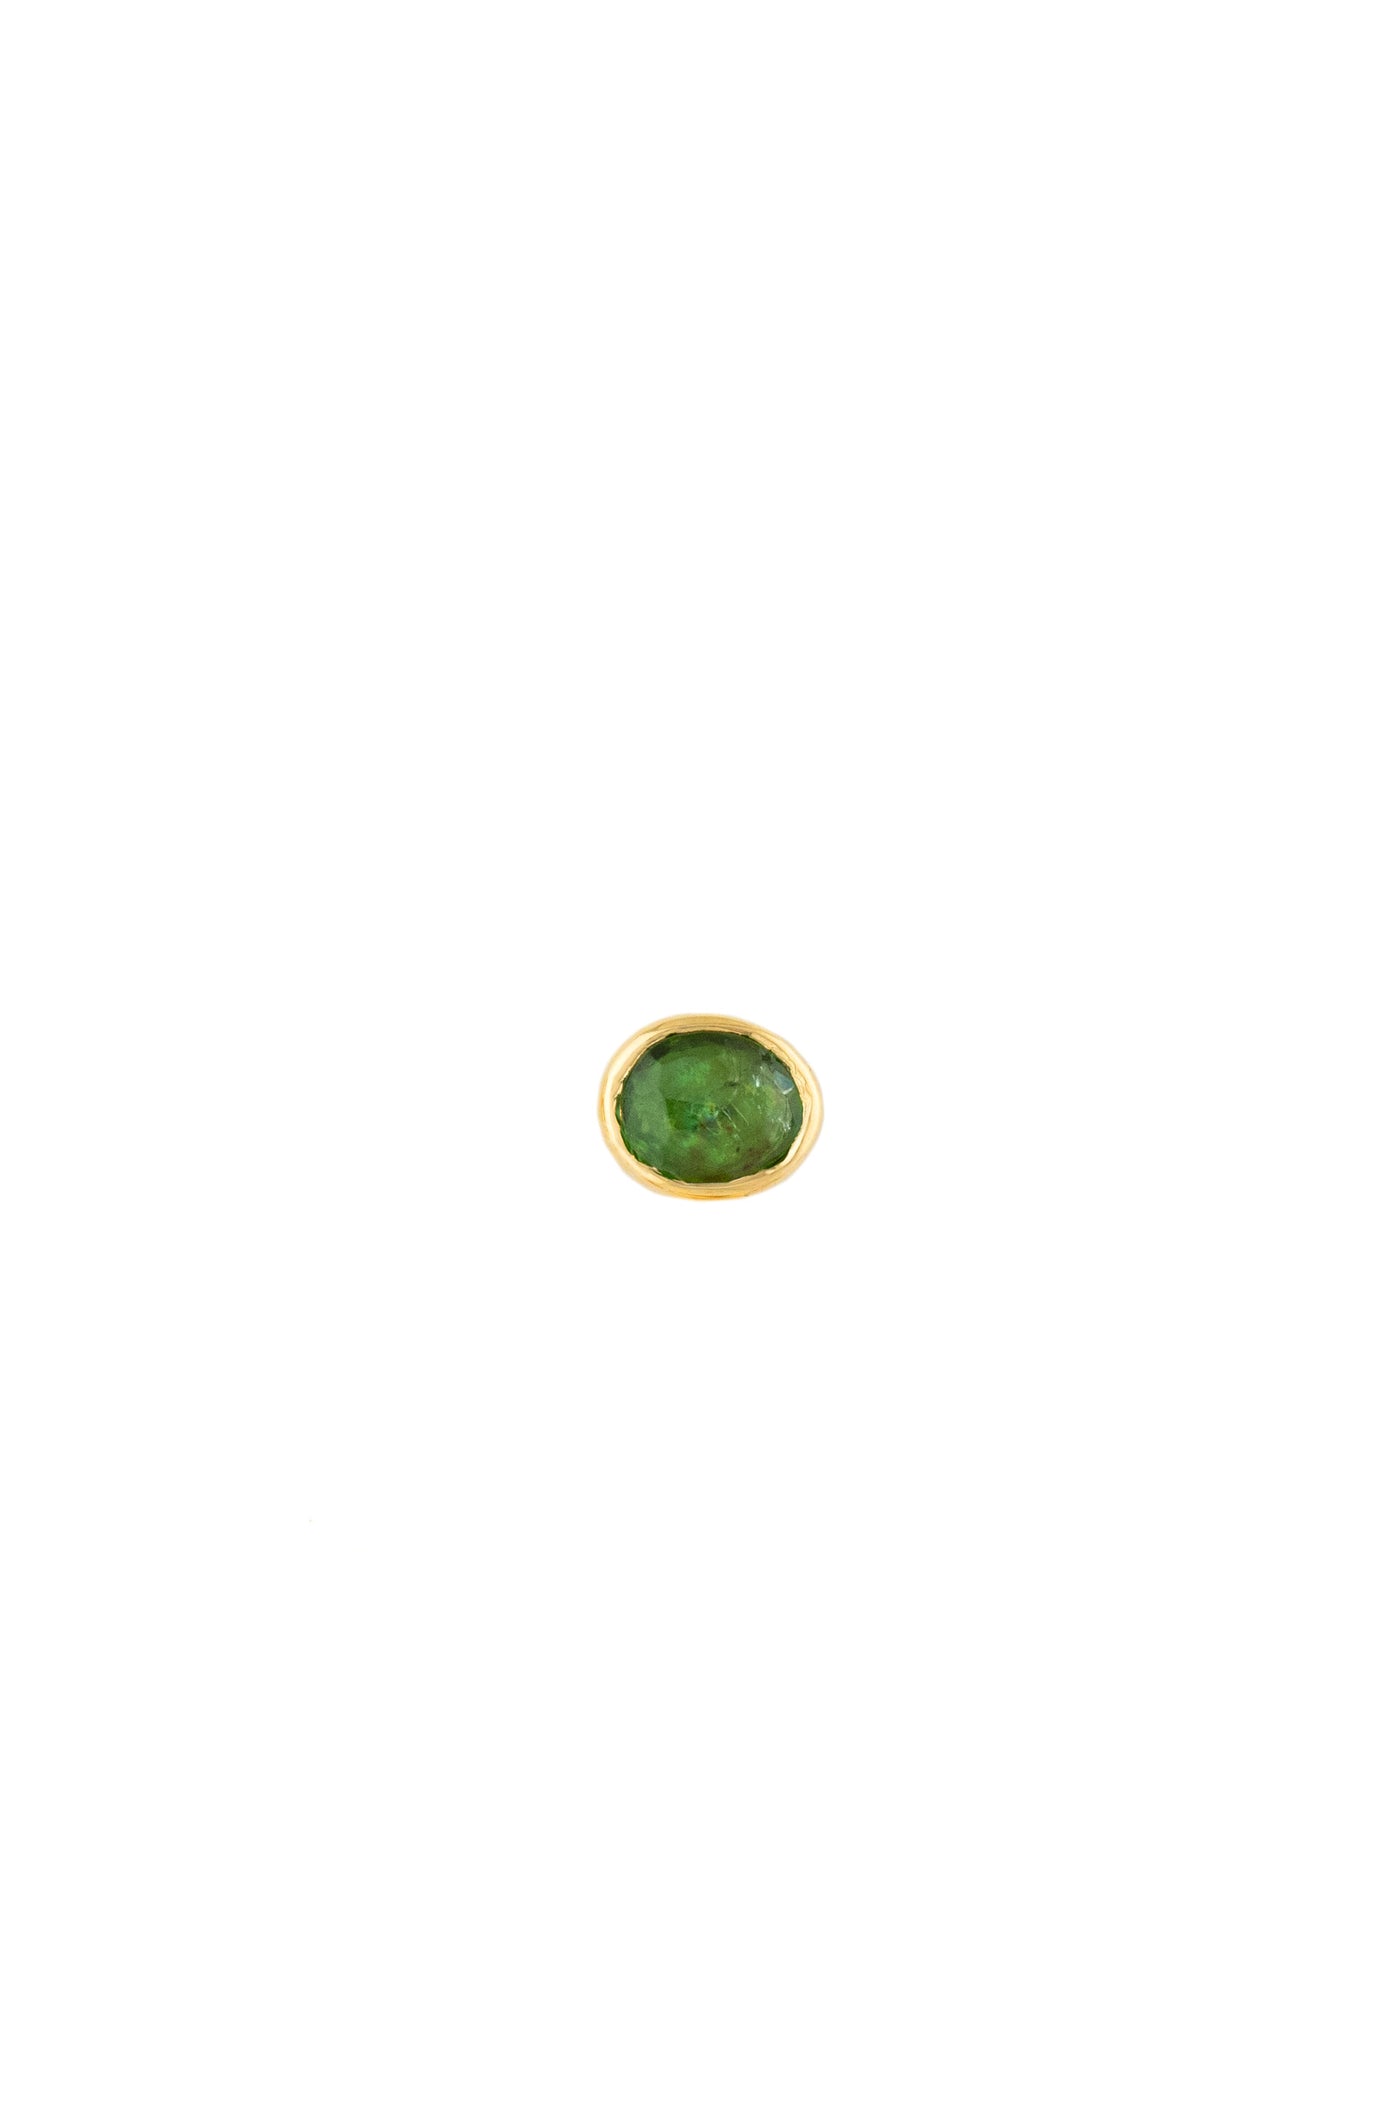 Green Tourmaline Stud Earrings